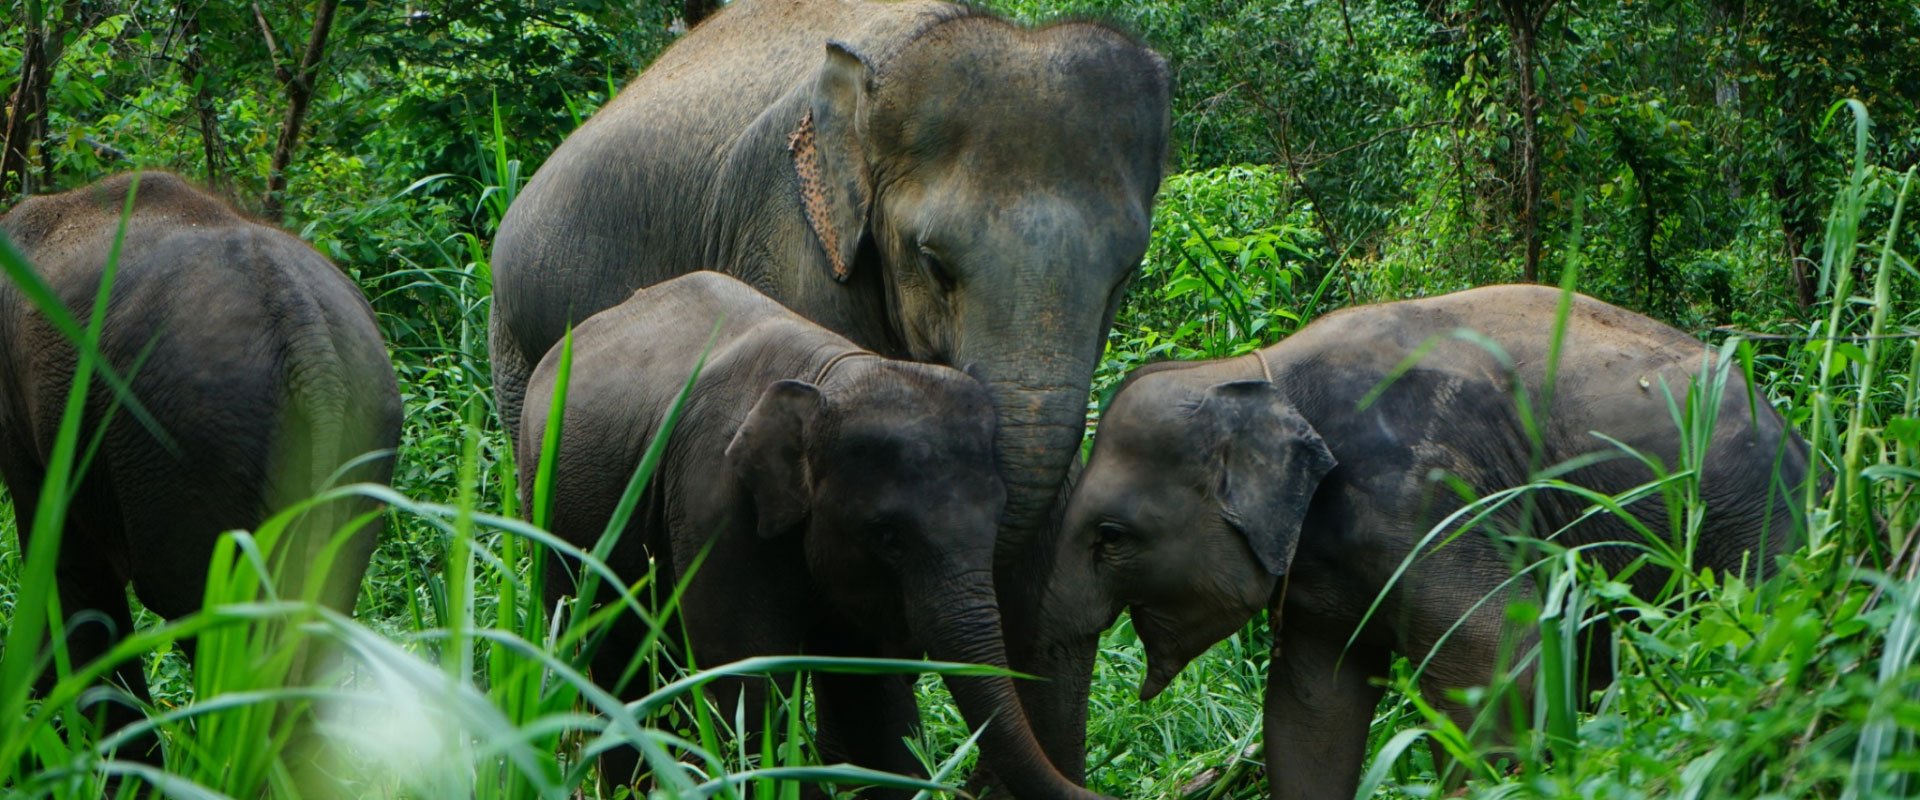 Our Elephants